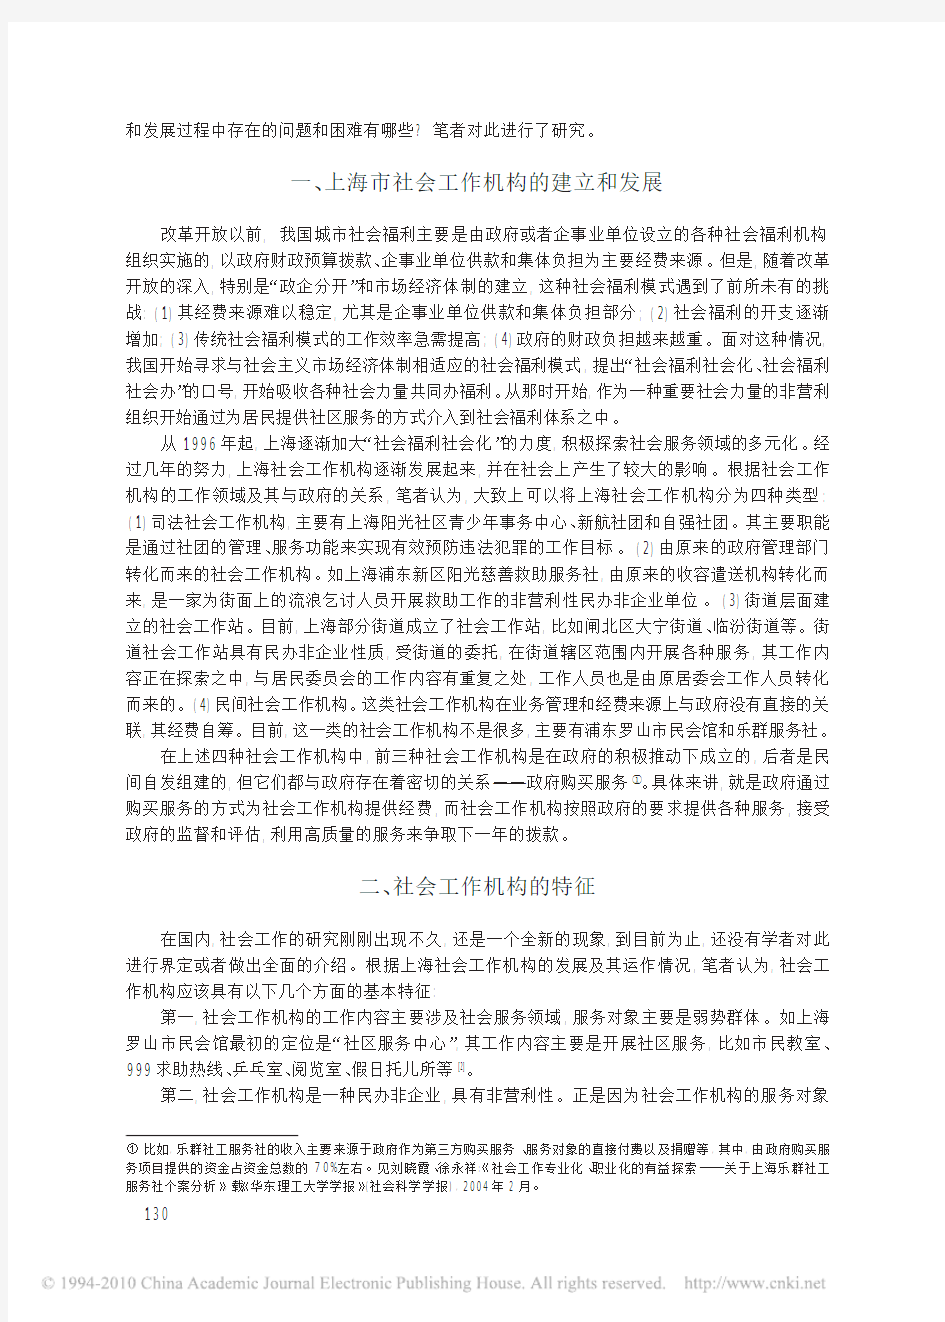 上海社会工作机构的实践与探索分析